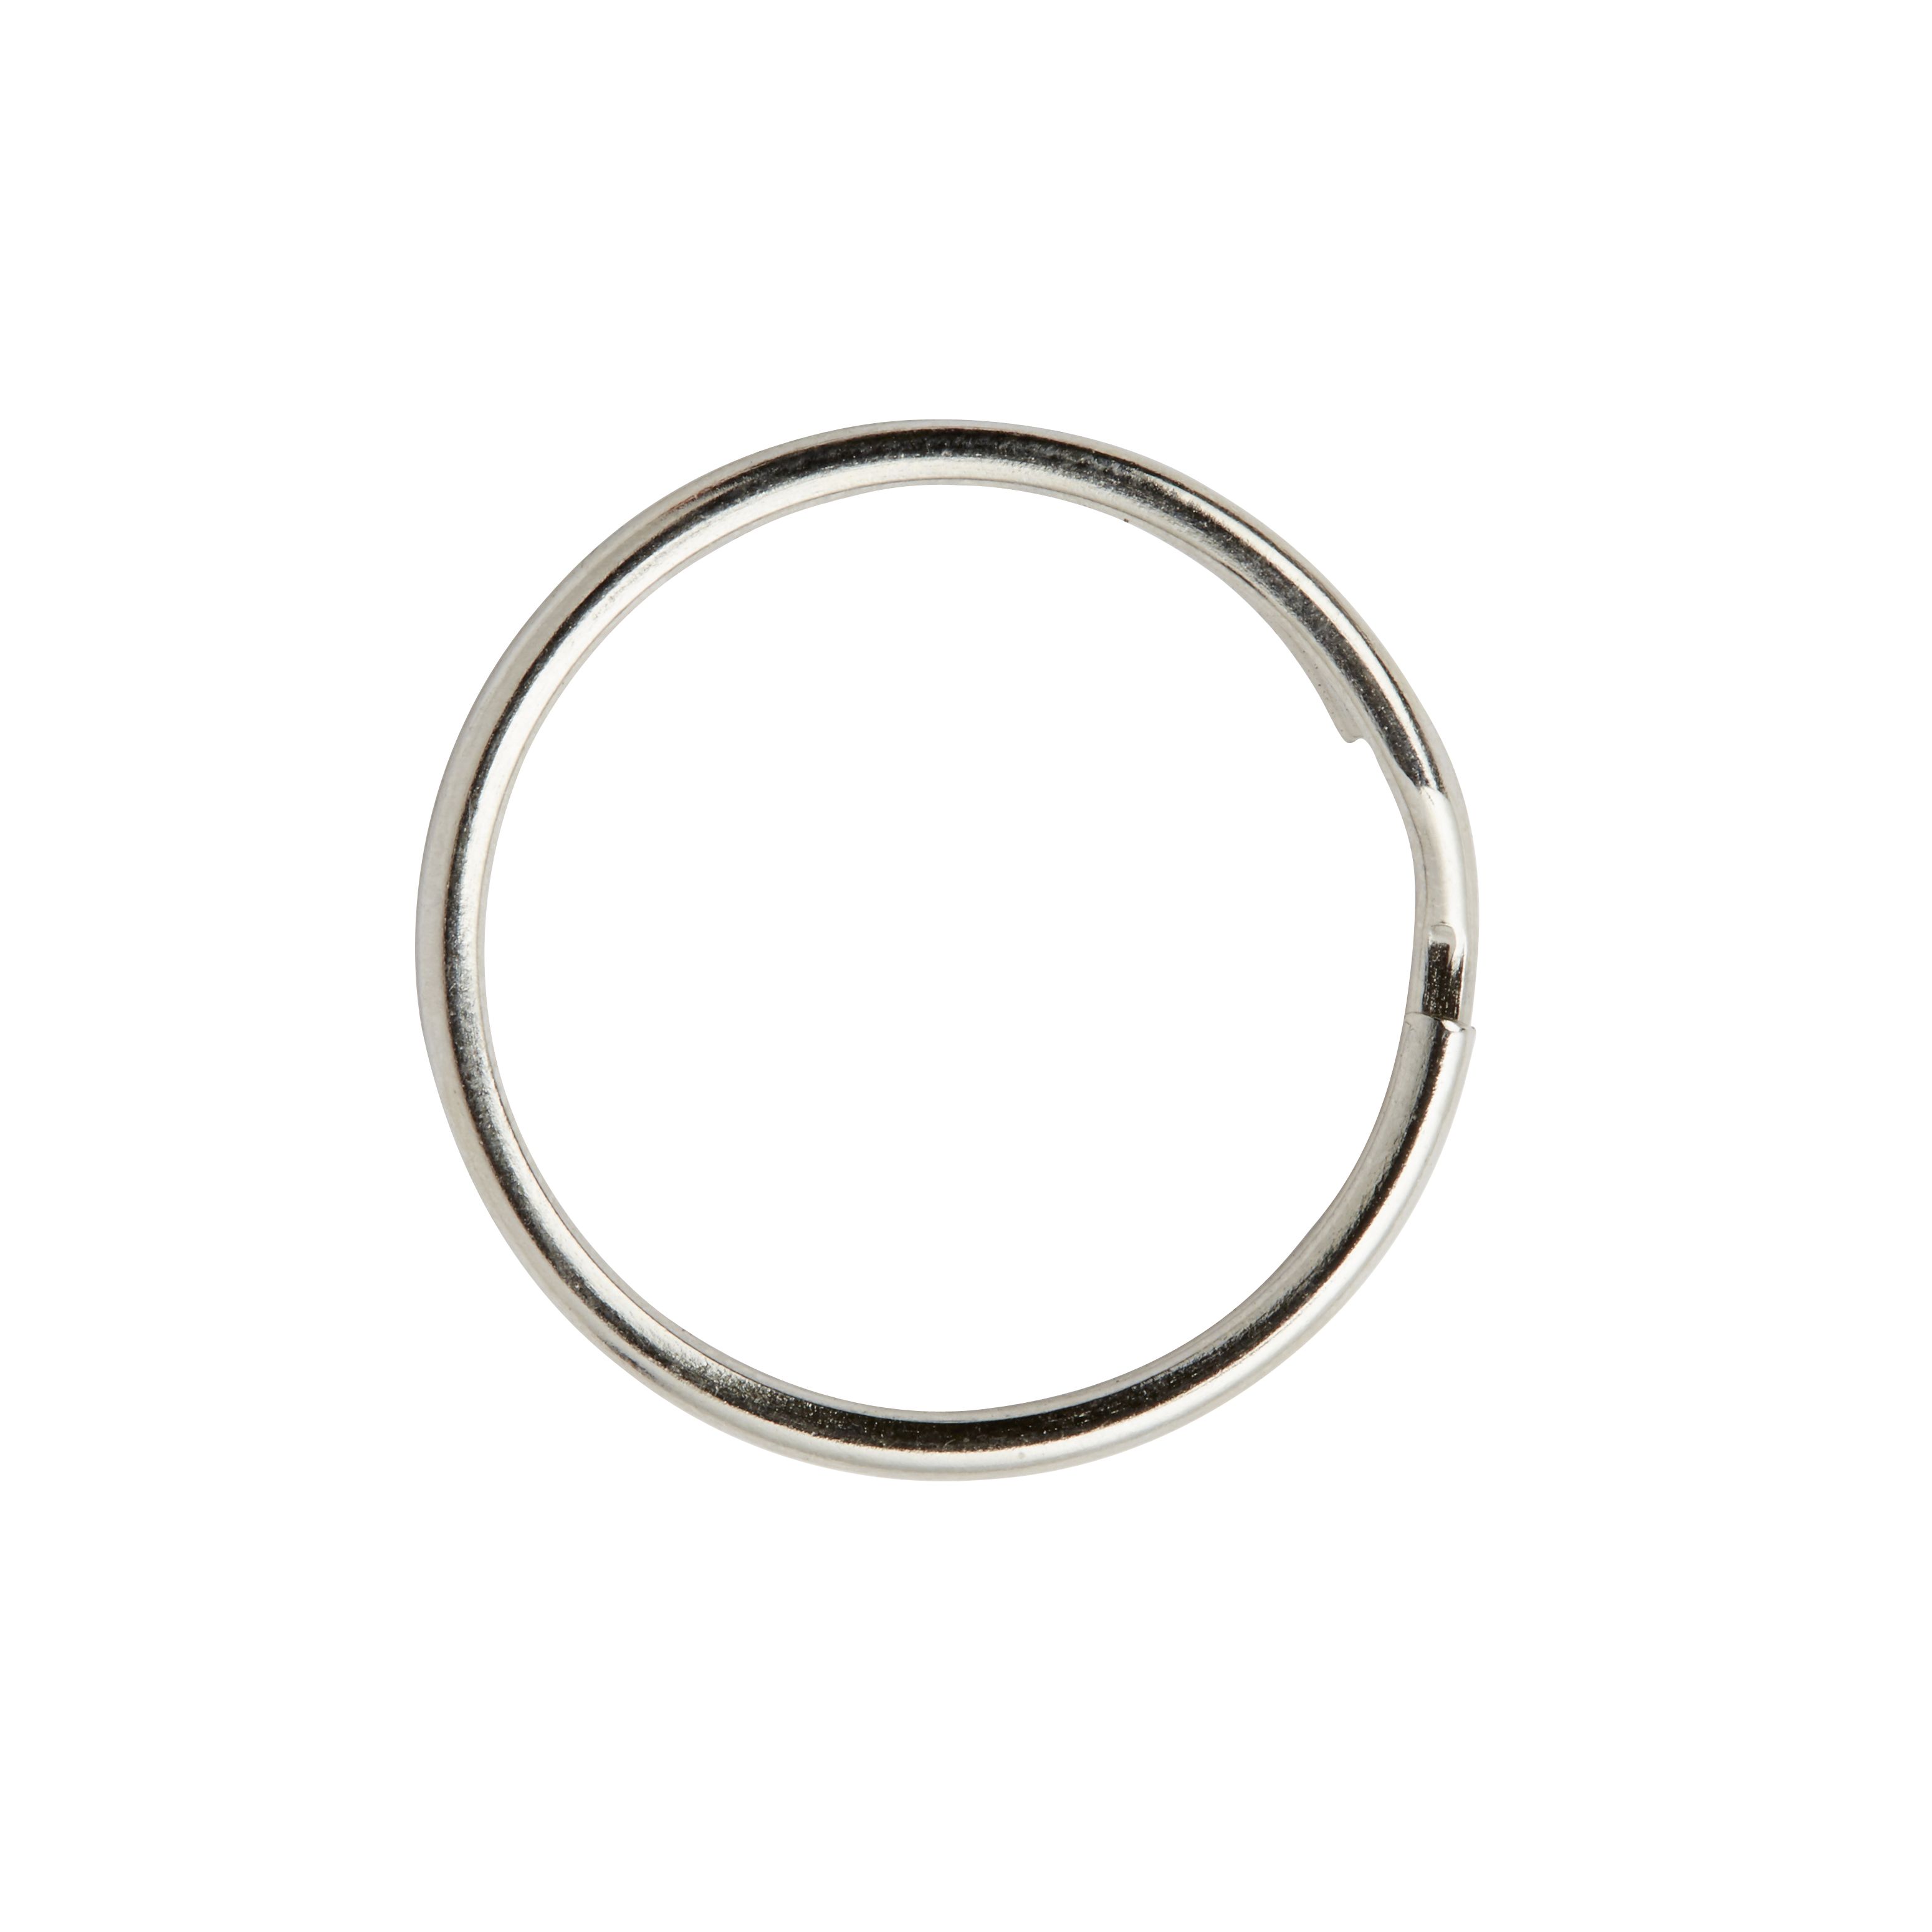 Diall Steel Split ring (Dia)18mm, Pack of 6